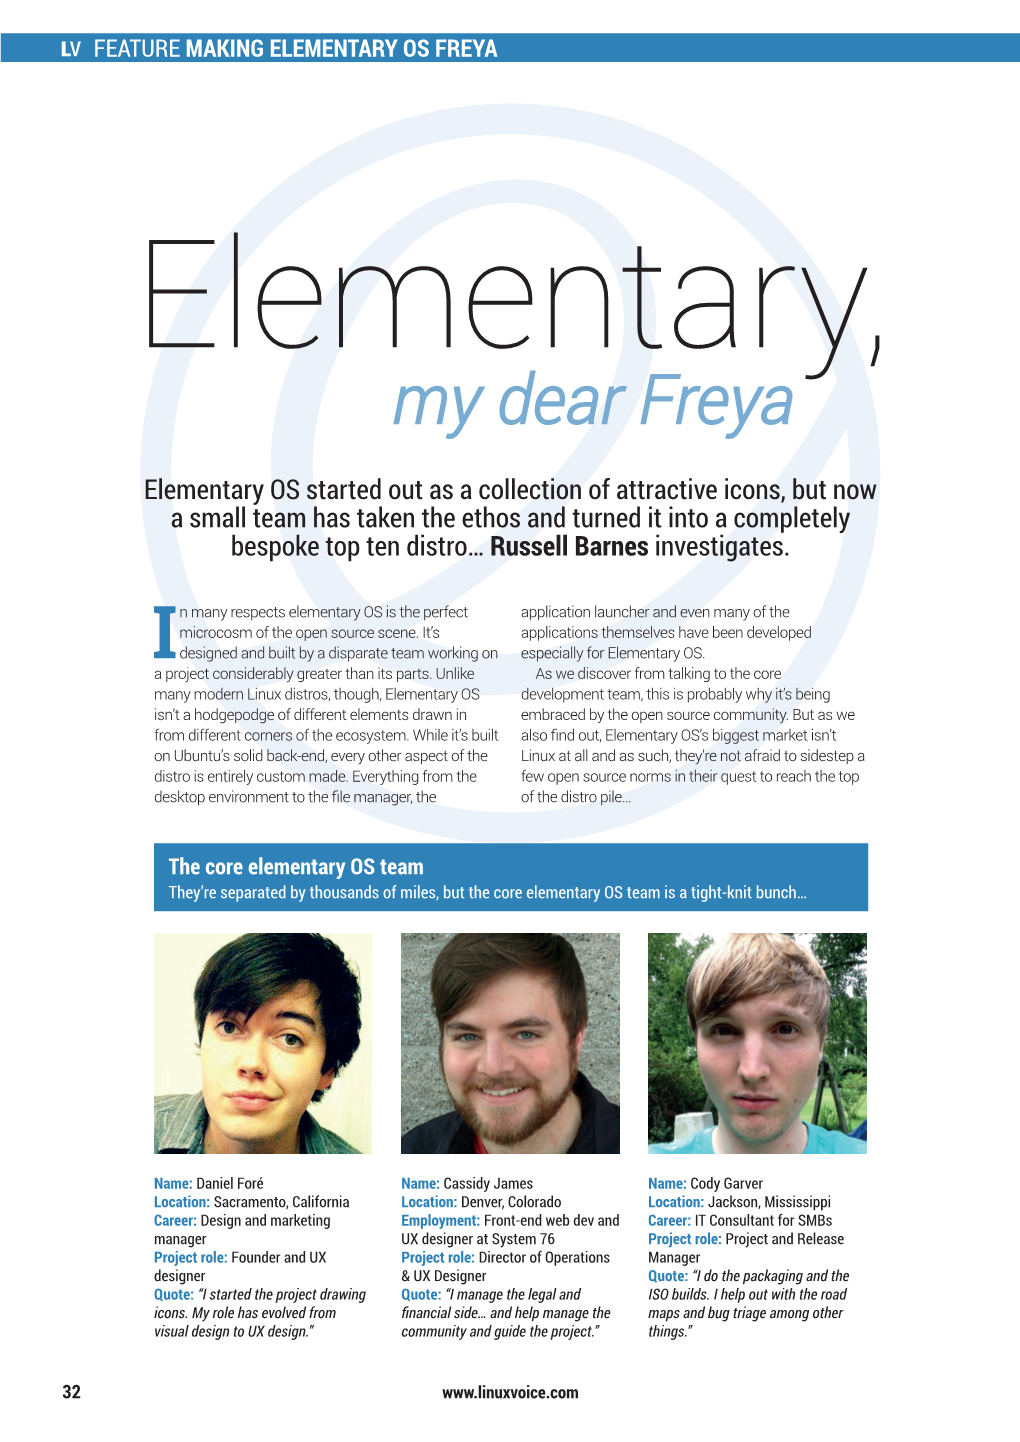 My Dear Freya